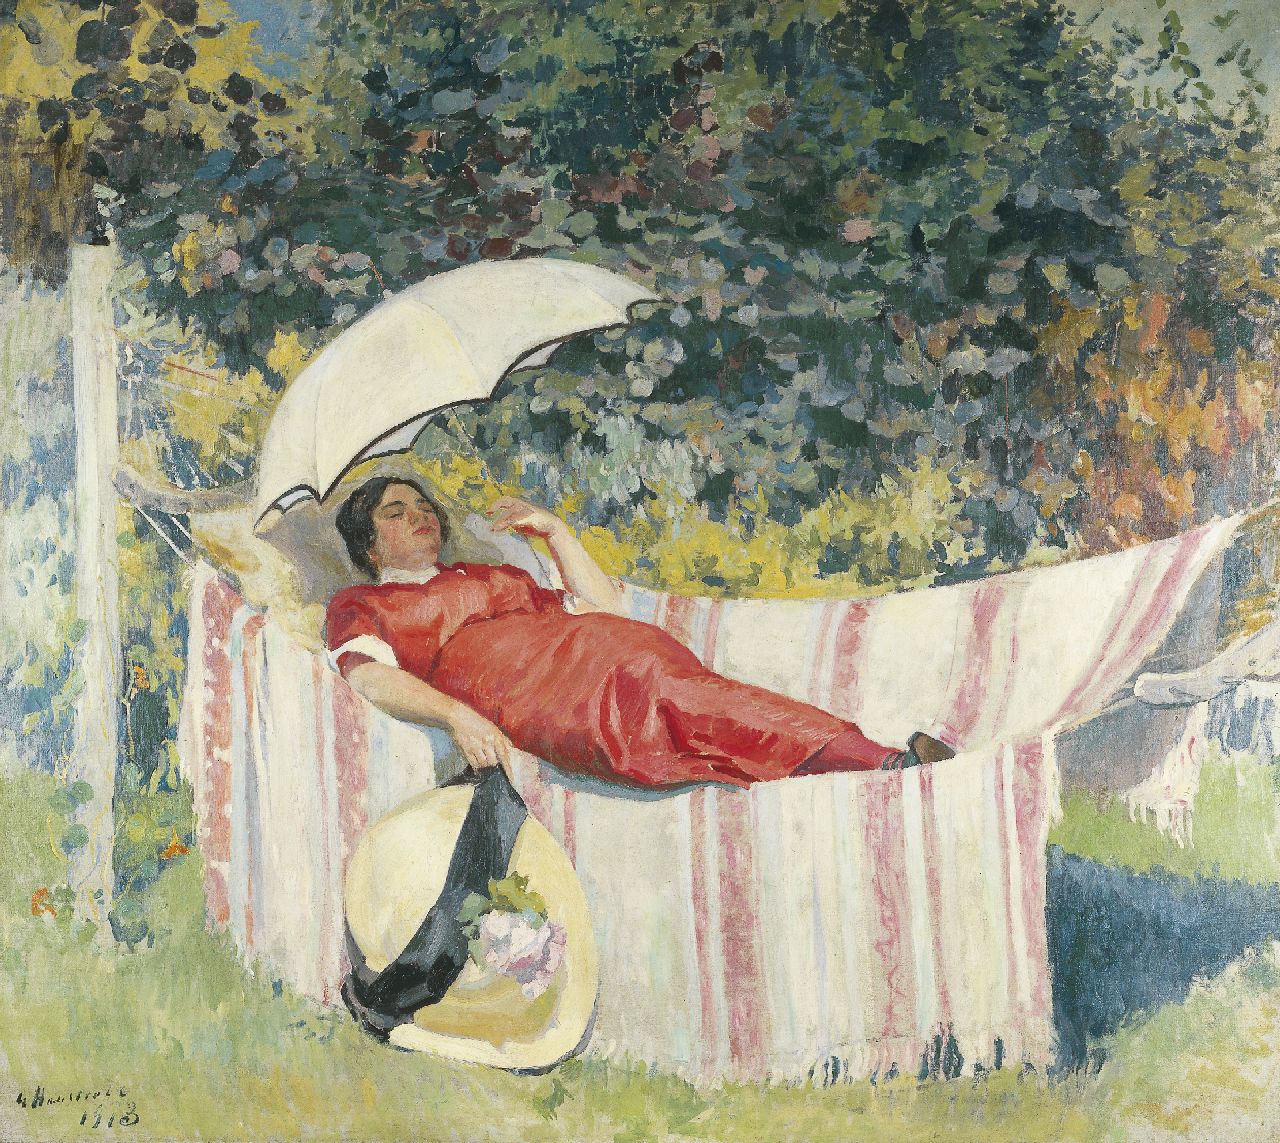 Haustrate G.  | Gaston Haustrate, Siësta in de hangmat, olieverf op doek 178,0 x 202,0 cm, gesigneerd linksonder en gedateerd 1913